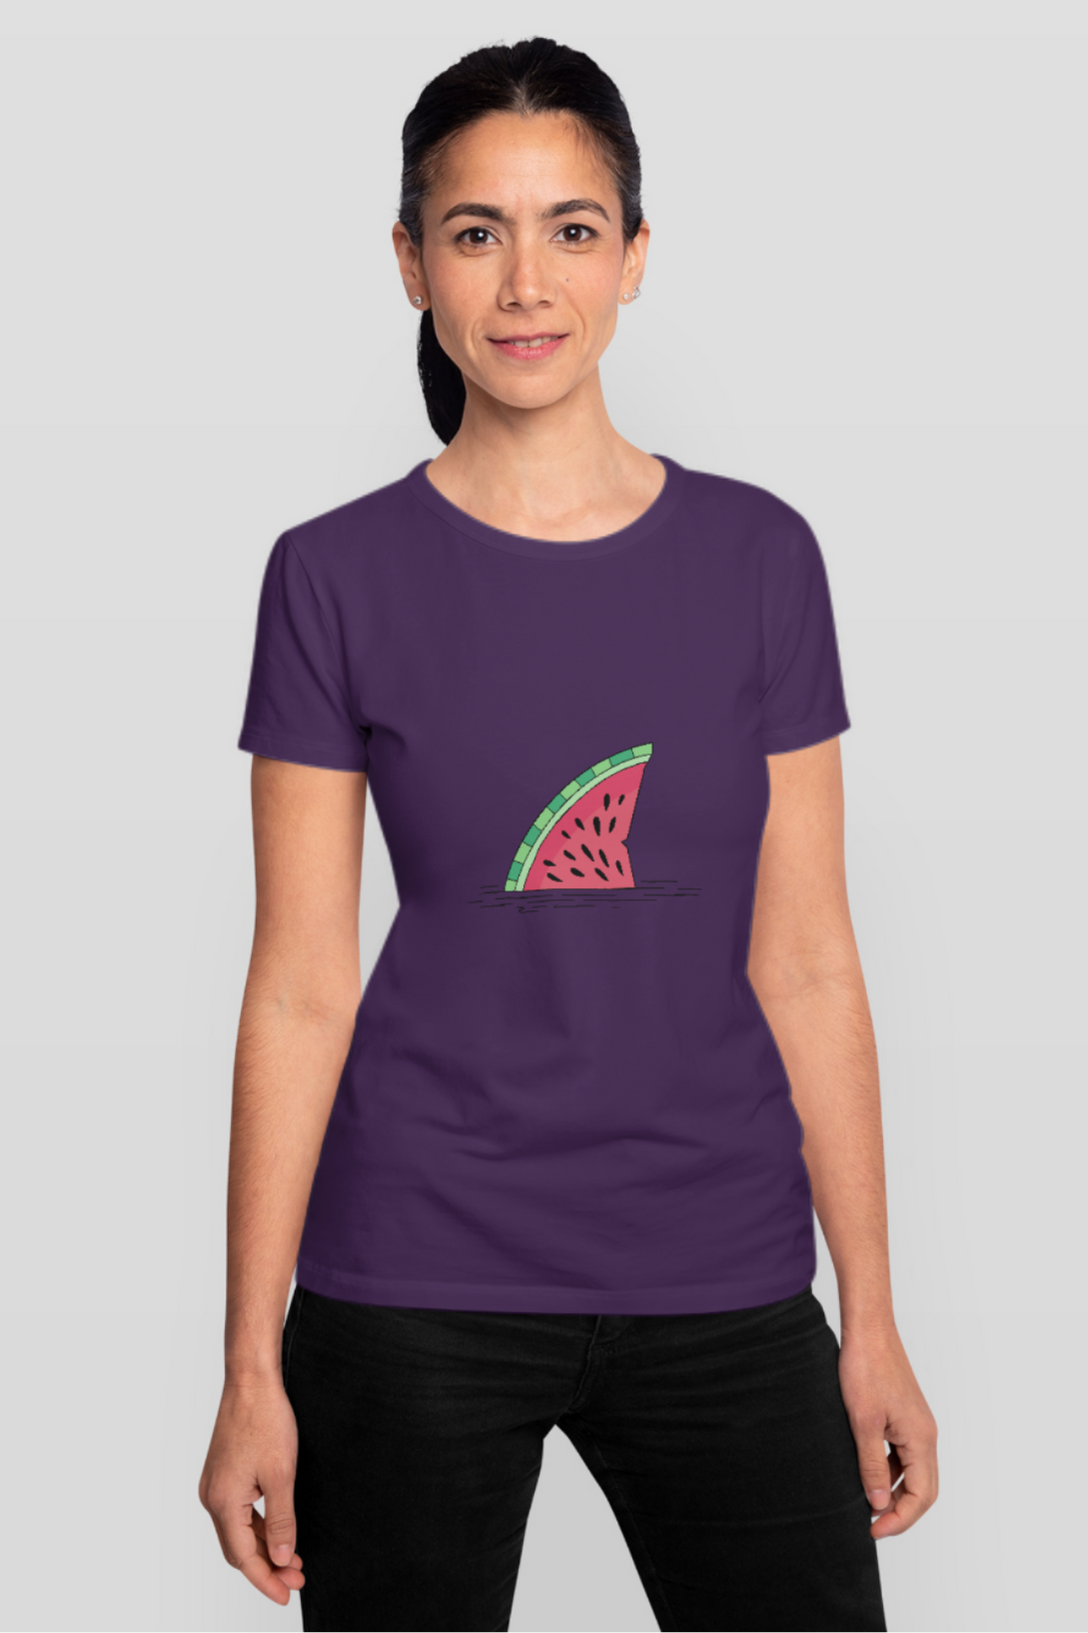 Watermelon Shark Fin Printed T-Shirt For Women - WowWaves - 8